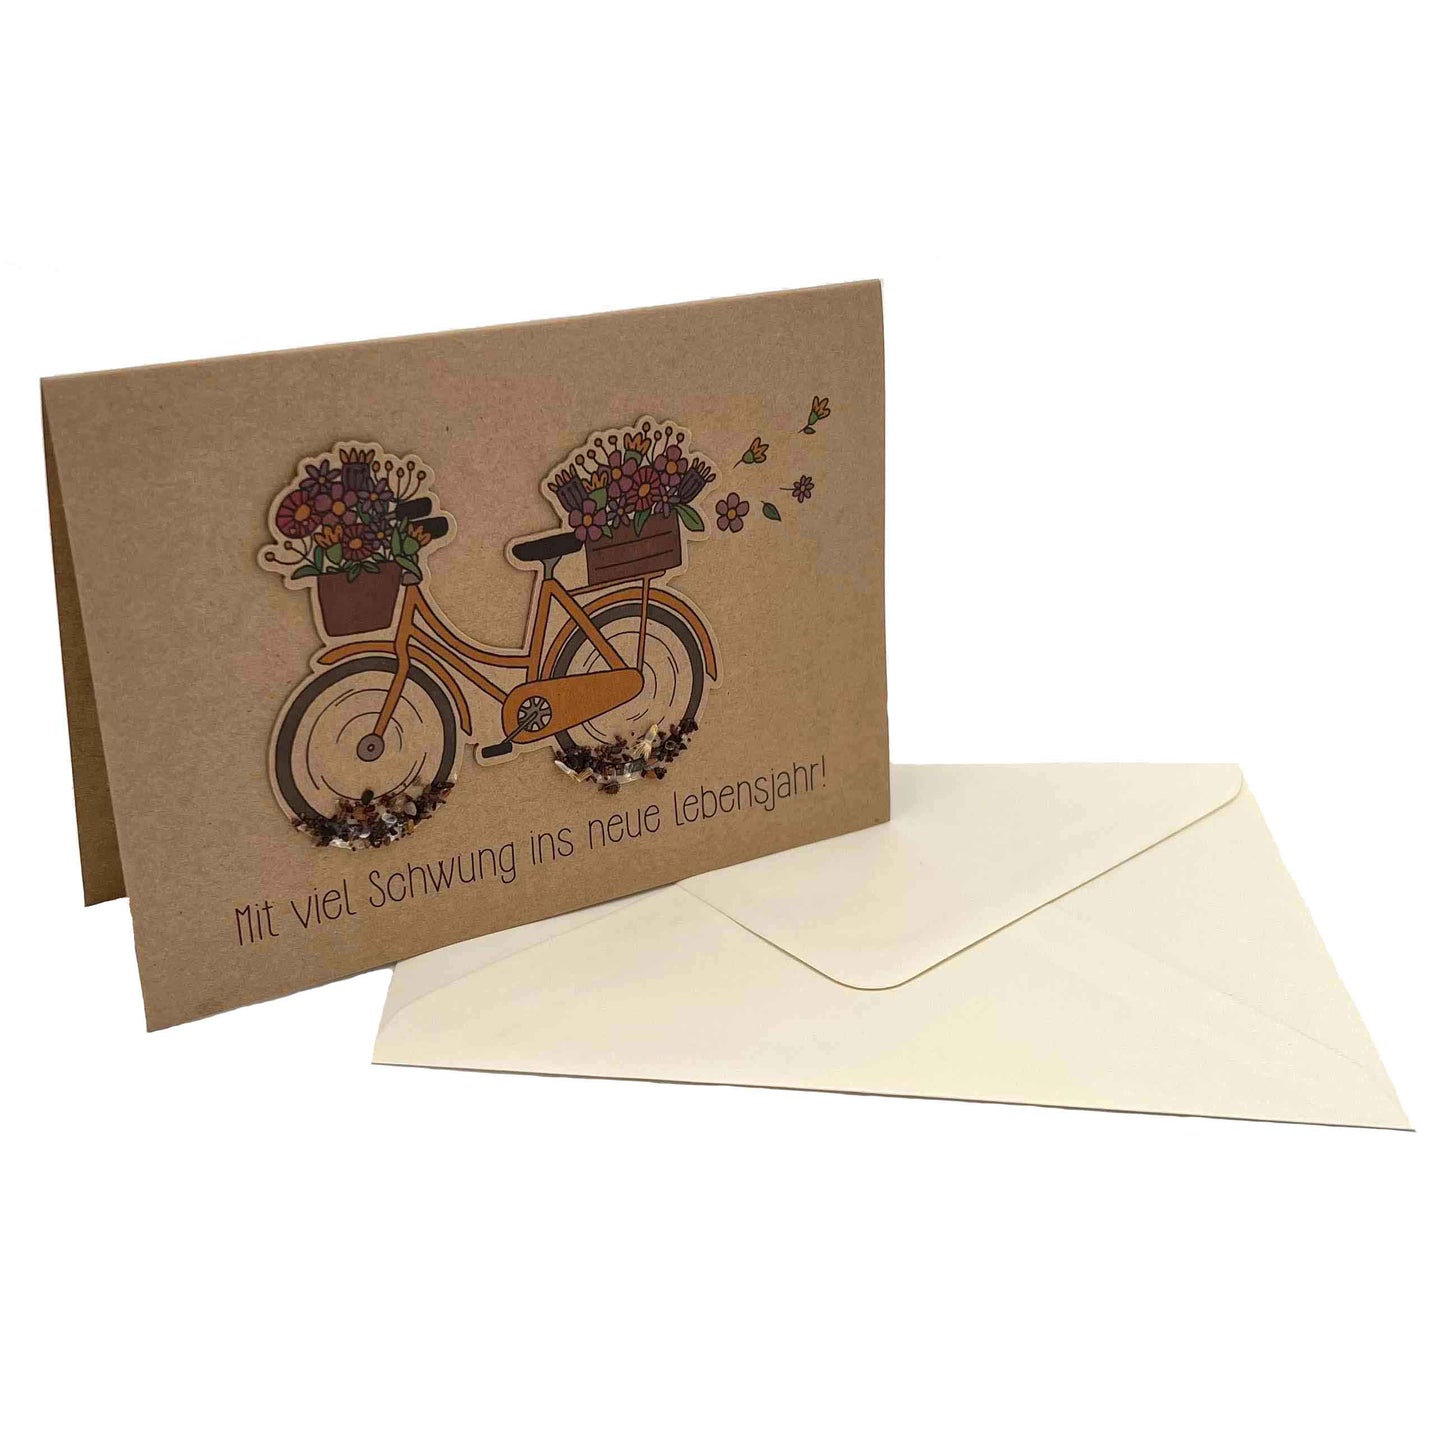 DIE STADTGÄRTNER hangefertigte Grußkarte / Klappkarte "Mit viel Schwung ins neue Lebensjahr!" mit Fahrrad aus dicker Pappe zum Einpflanzen inkl. Umschlag